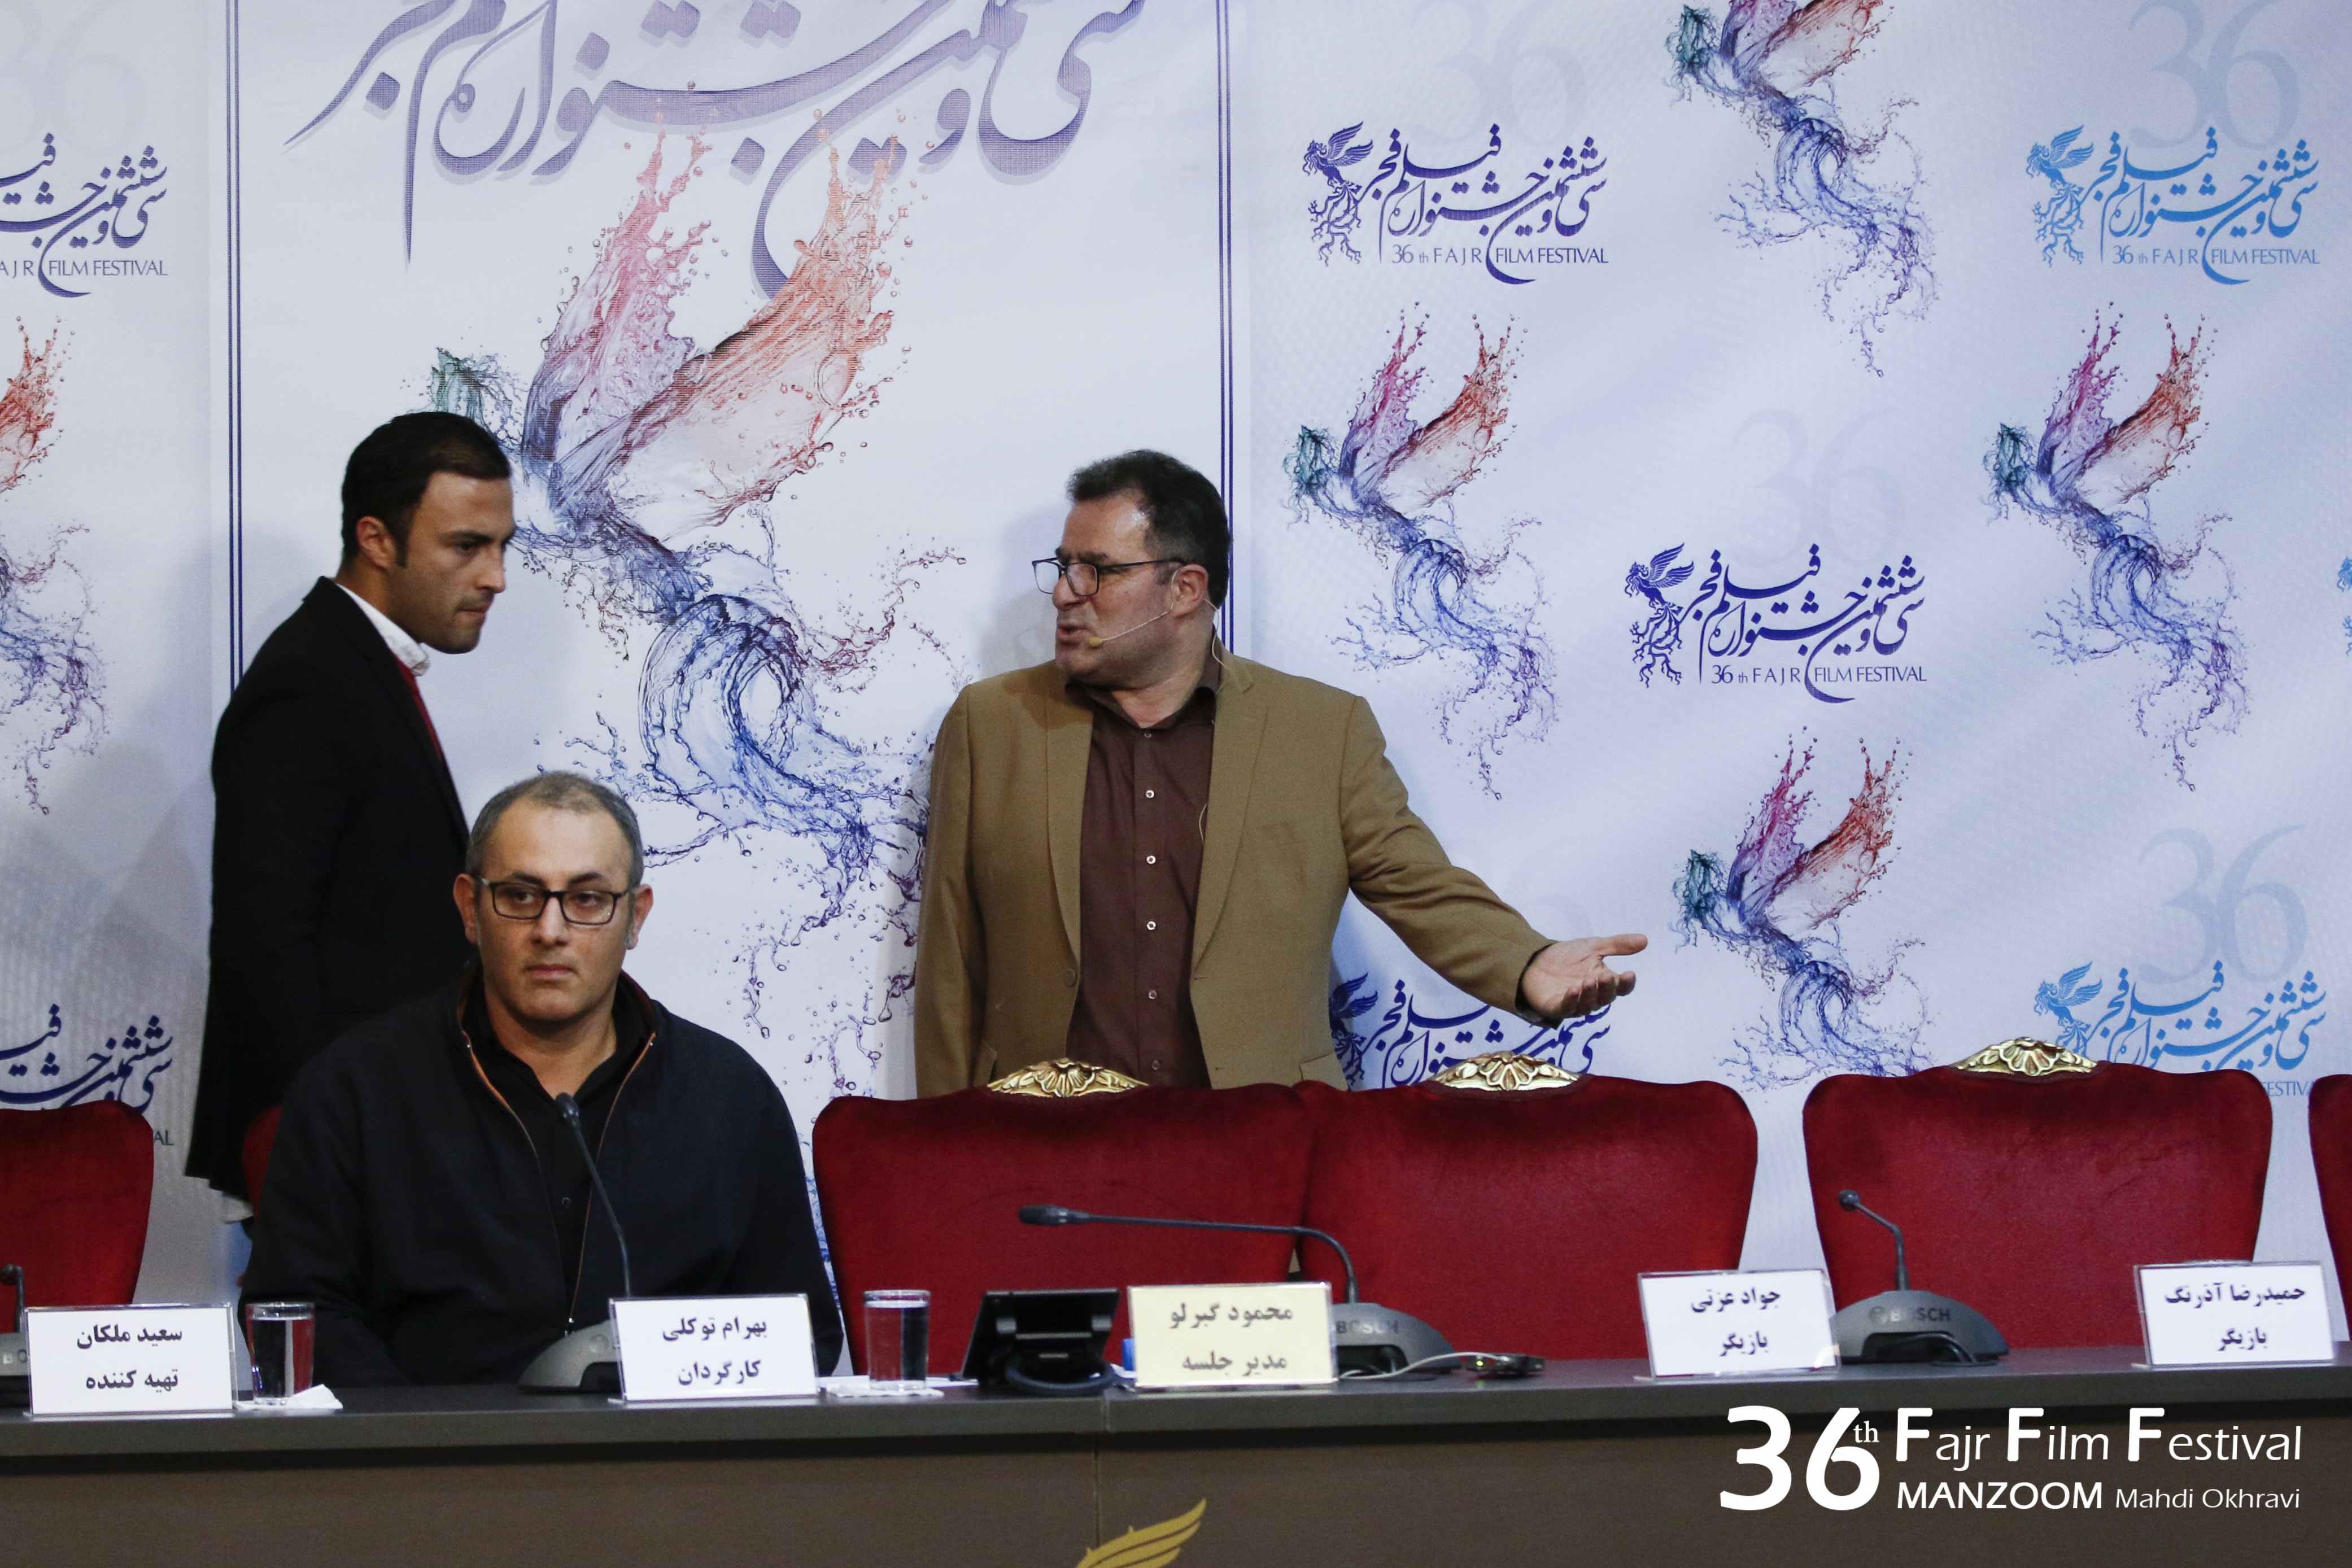 بهرام توکلی در نشست خبری فیلم سینمایی تنگه ابوقریب به همراه امیر جدیدی و محمود گبرلو